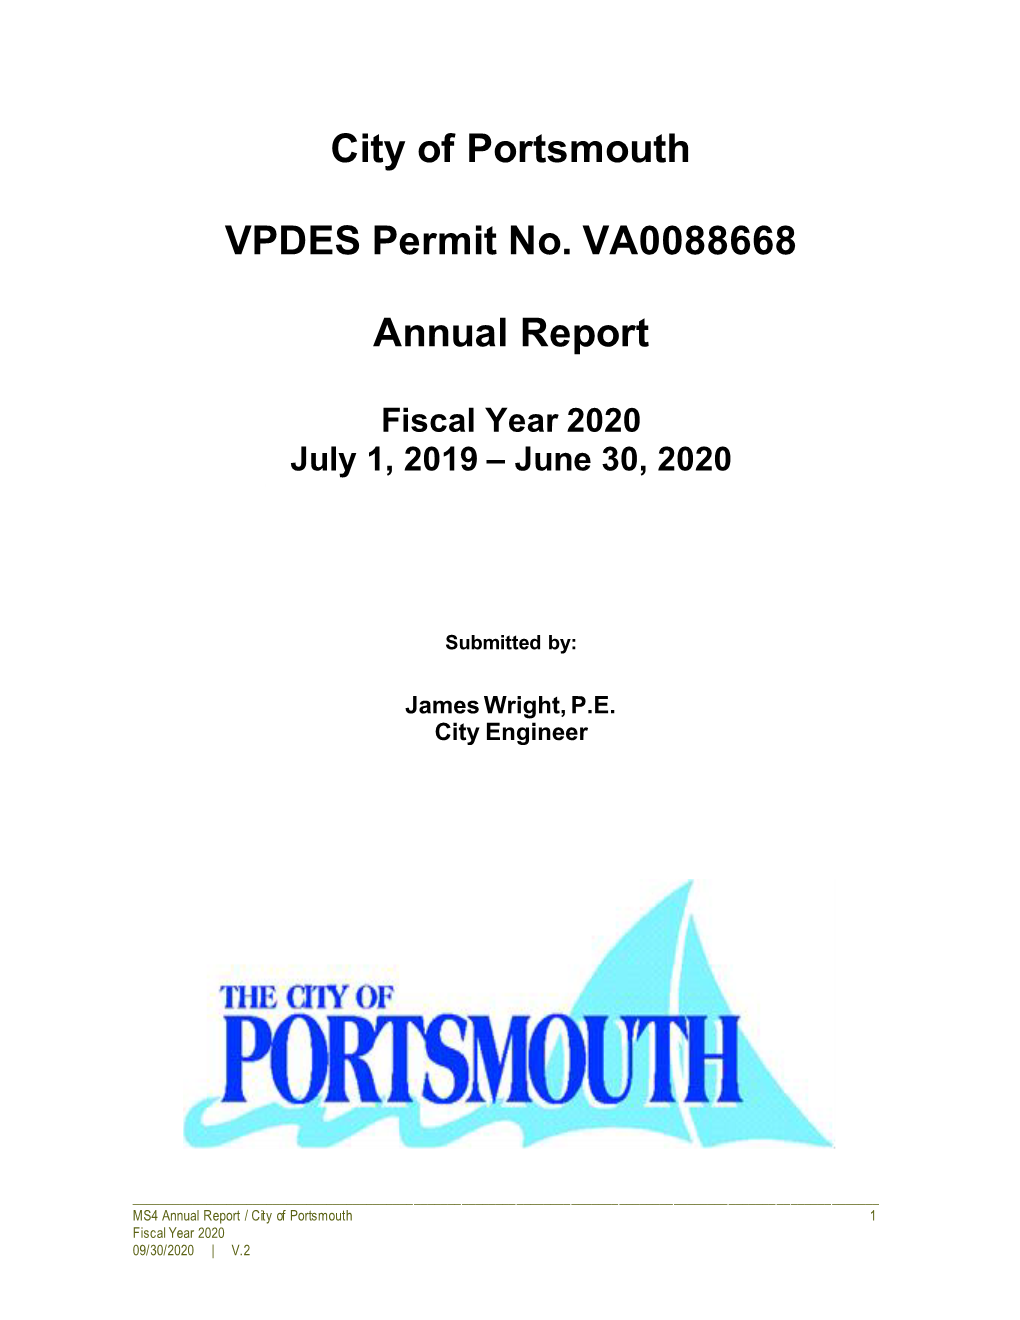 City of Portsmouth VPDES Permit No. VA0088668 Annual Report